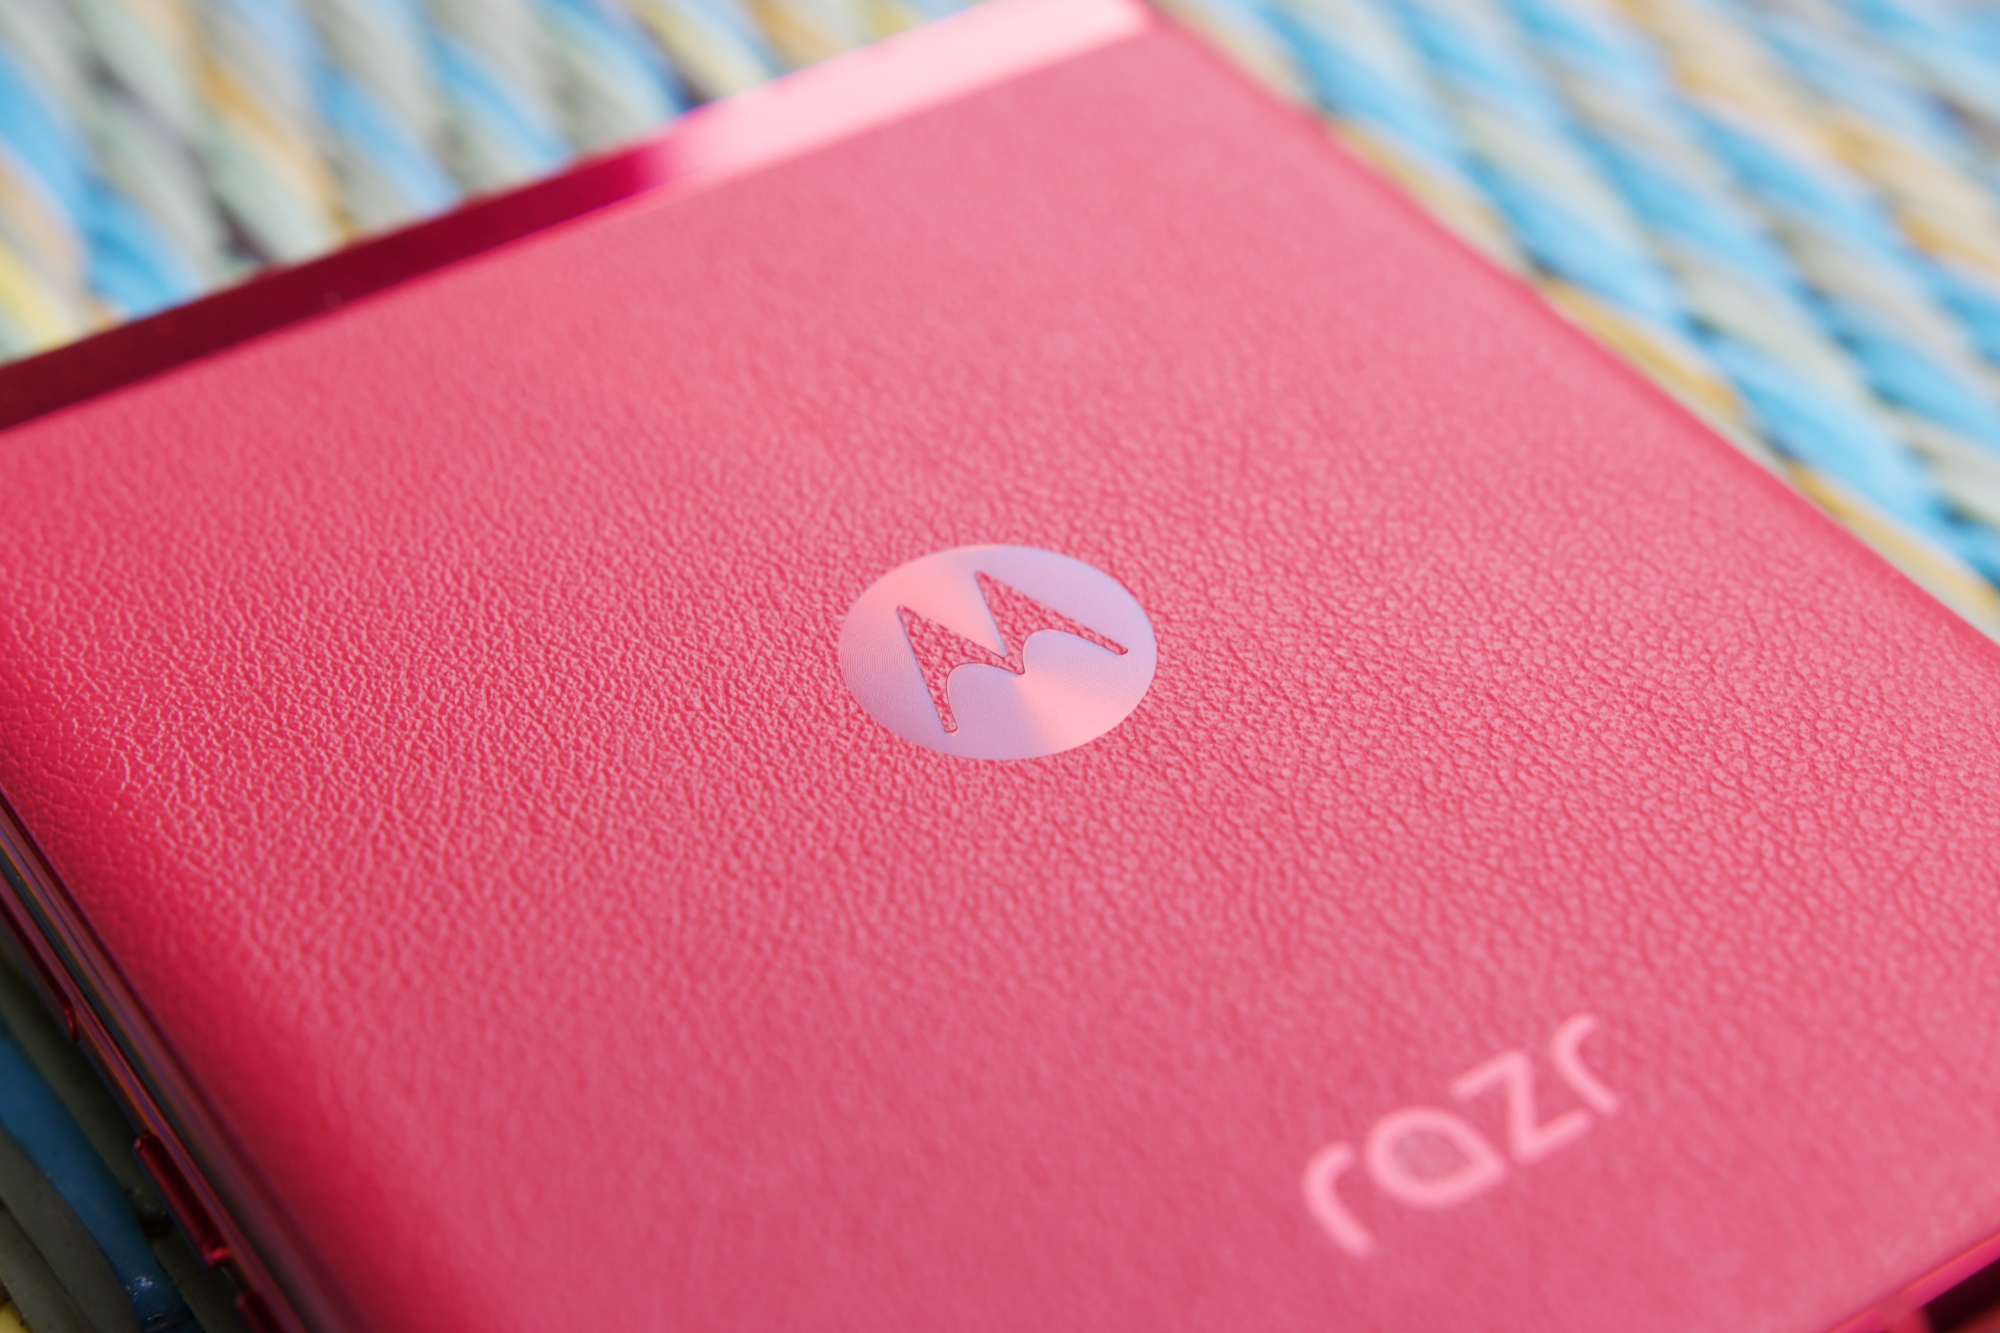 Viva Magenta Motorola Razr Plus और इसके लेदर बैक का क्लोज़-अप शॉट।